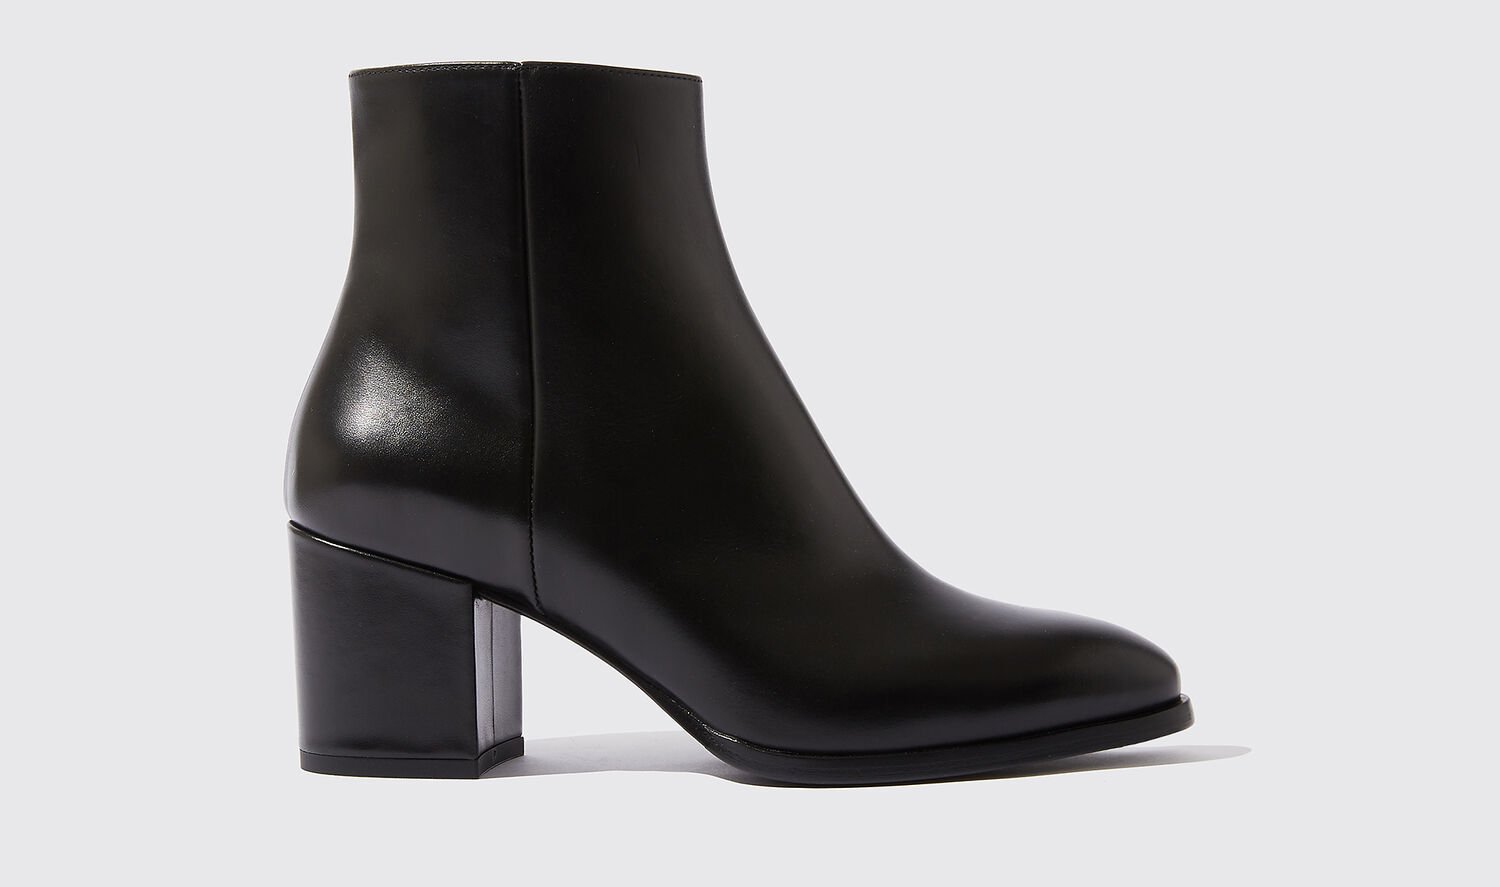 Scarosso Boots Costanza Nera Calf Leather In Black - Calf